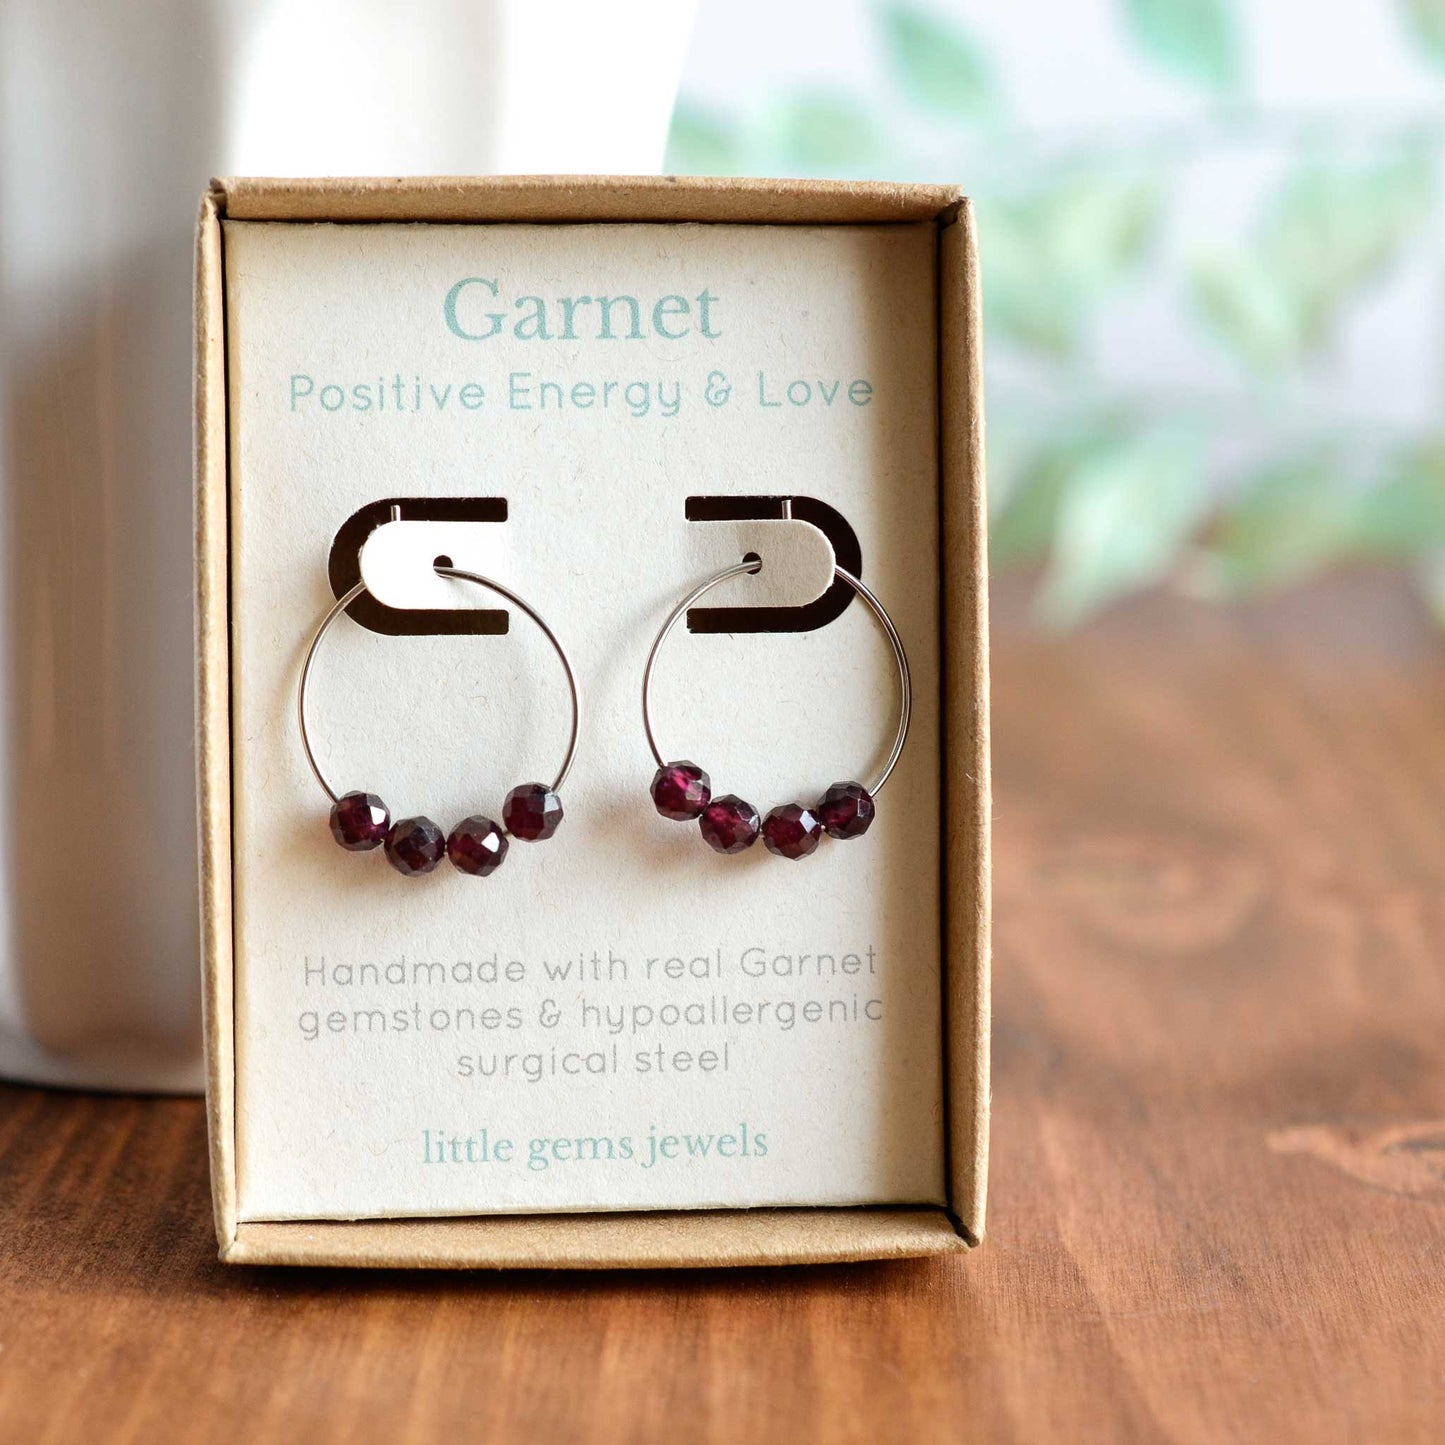 Garnet gemstone hoop earrings in gift box